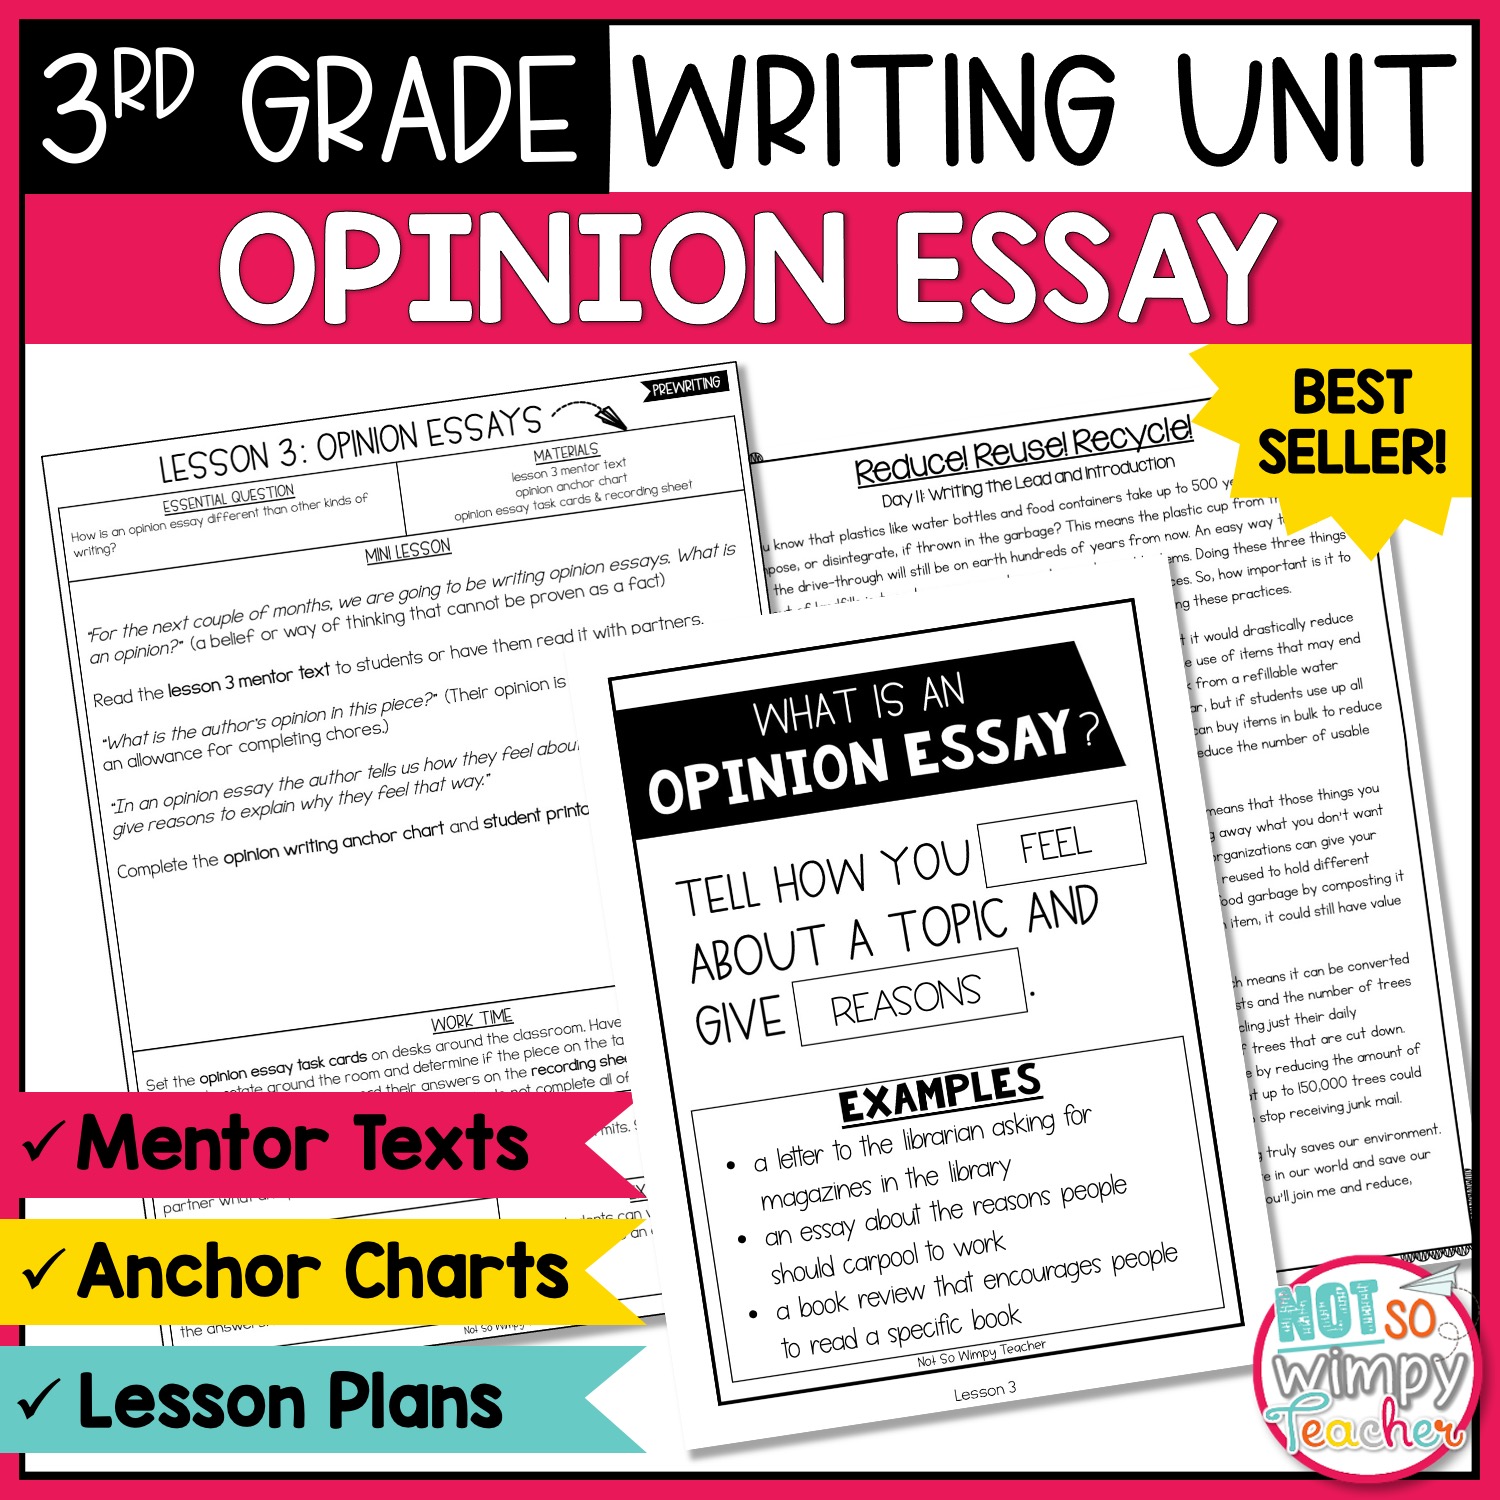 3rd grade opinion essay samples